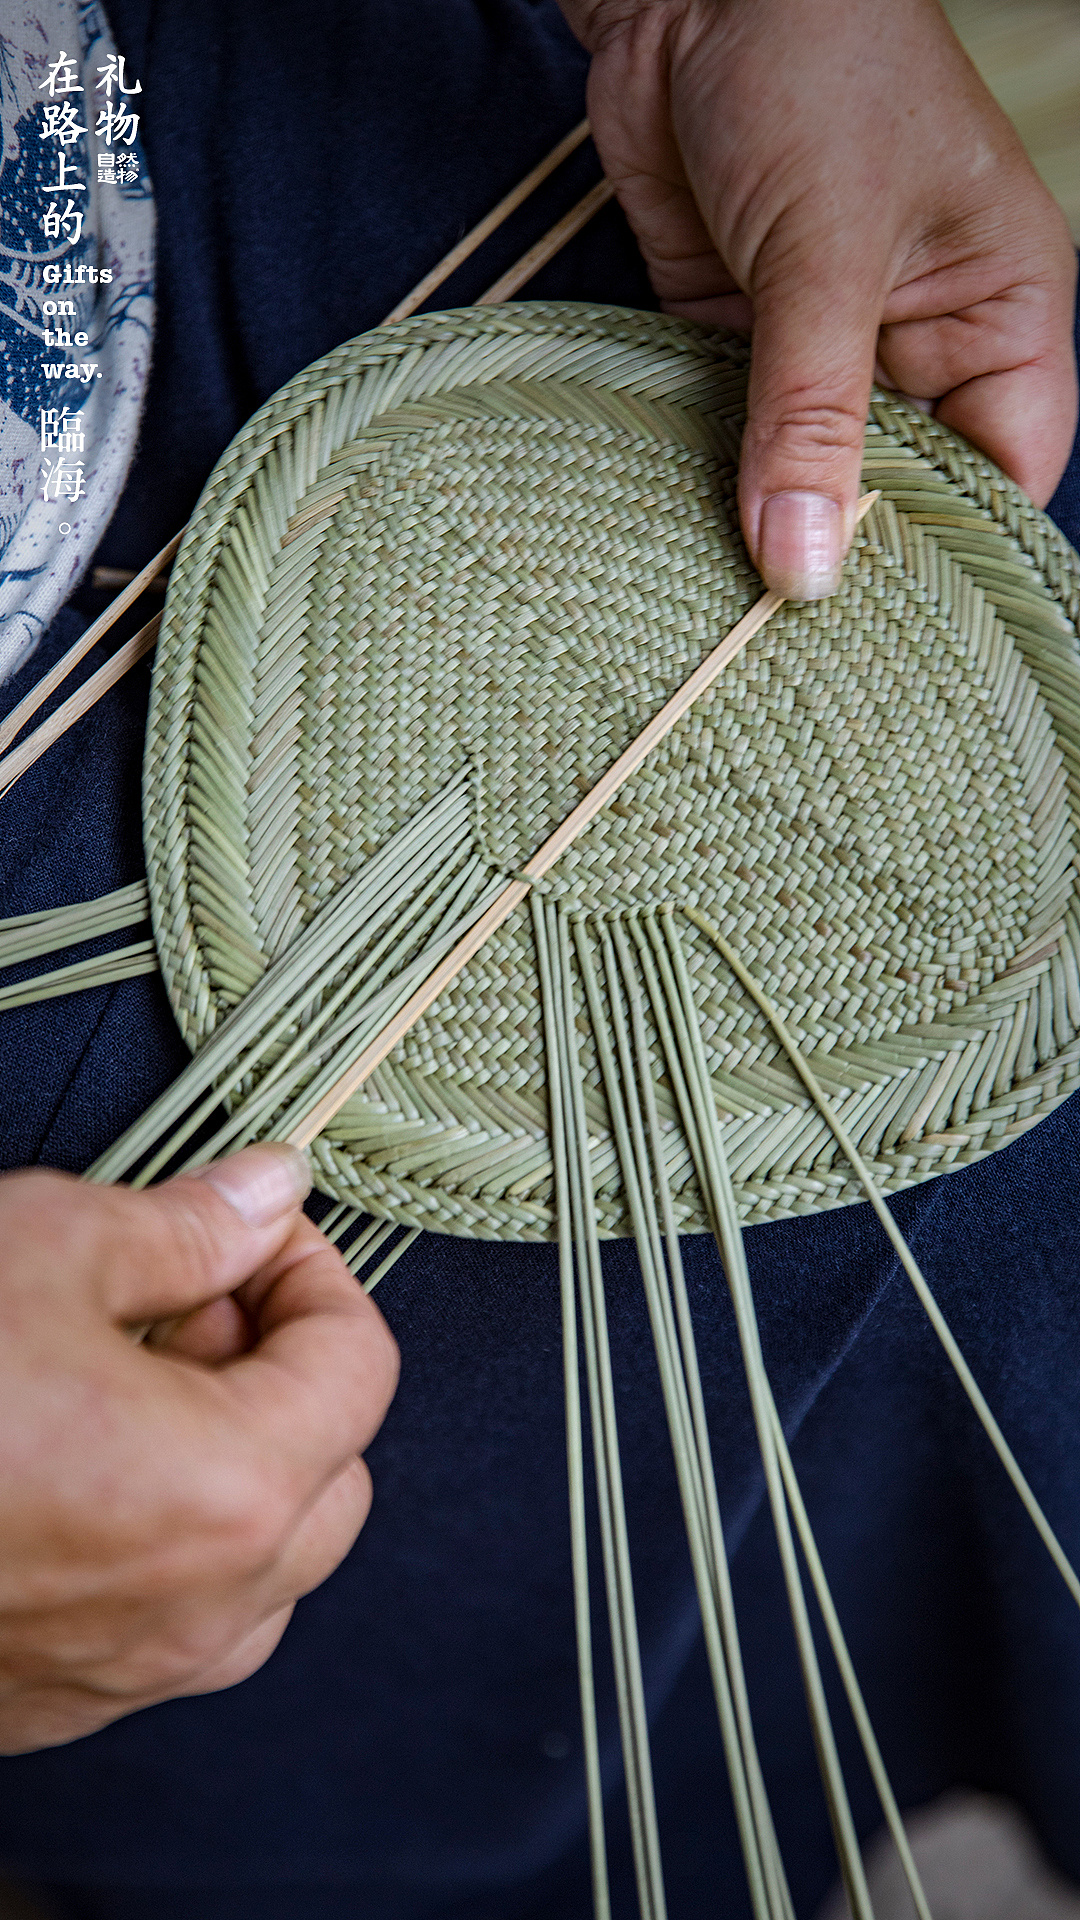 她组织村里的妇女们一起编织蒲扇让原本濒临失传的手艺再次回到大家的